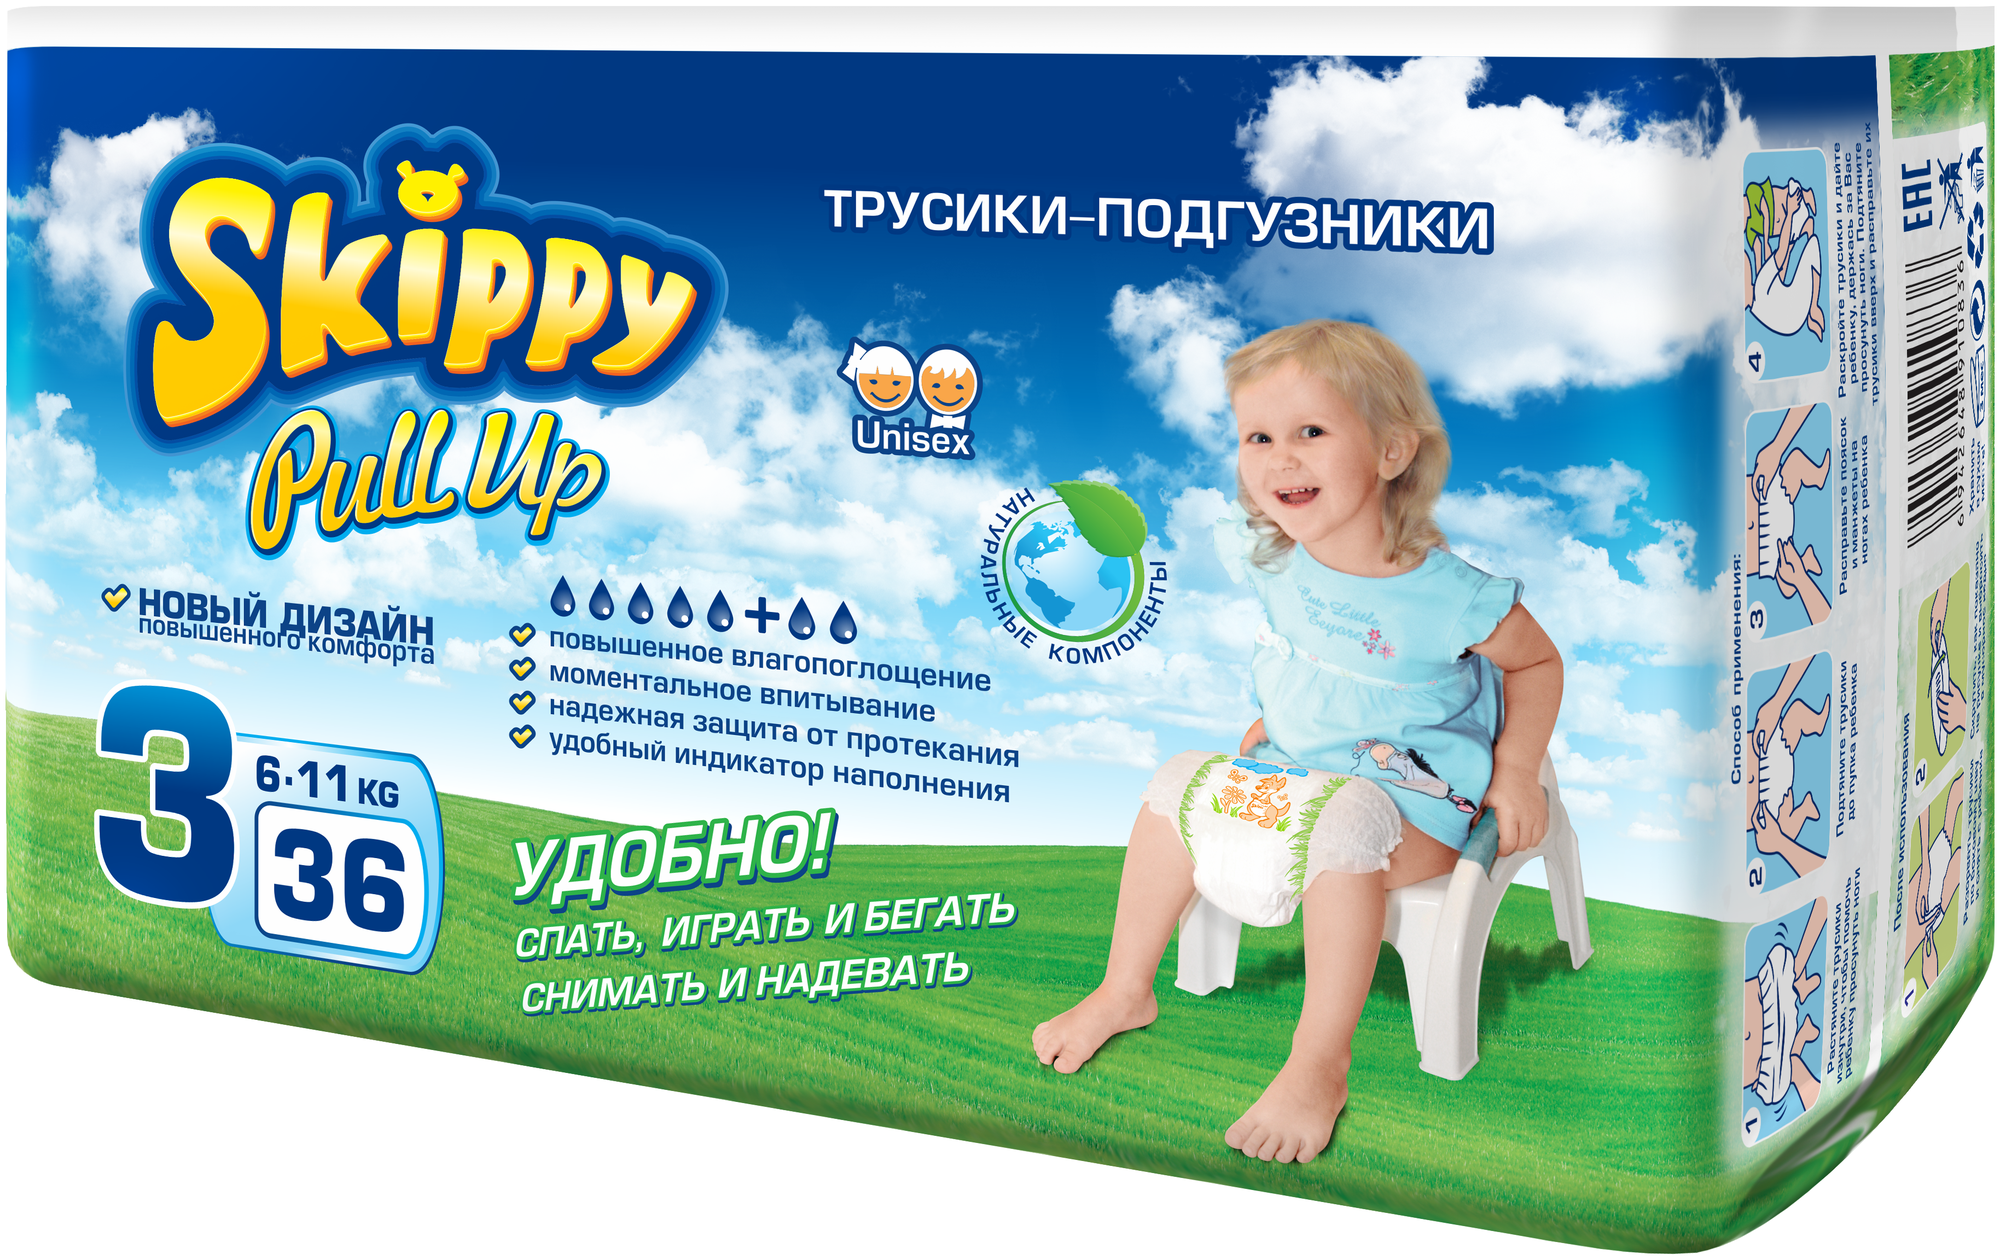 Трусики-подгузники для детей Skippy Pull Up, размер 3 (6-11кг), 36 шт .